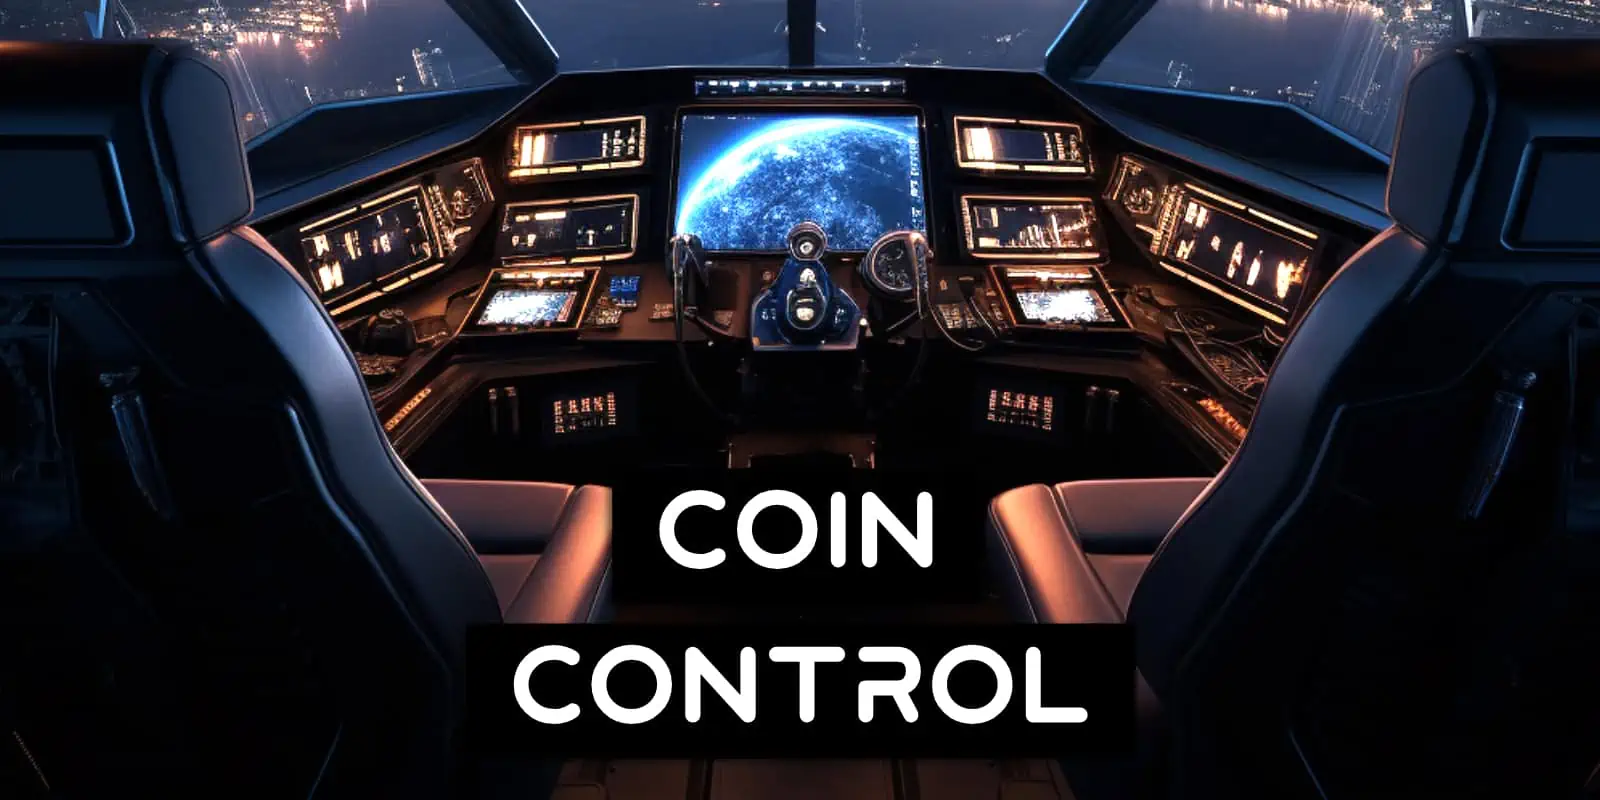 Coin Control